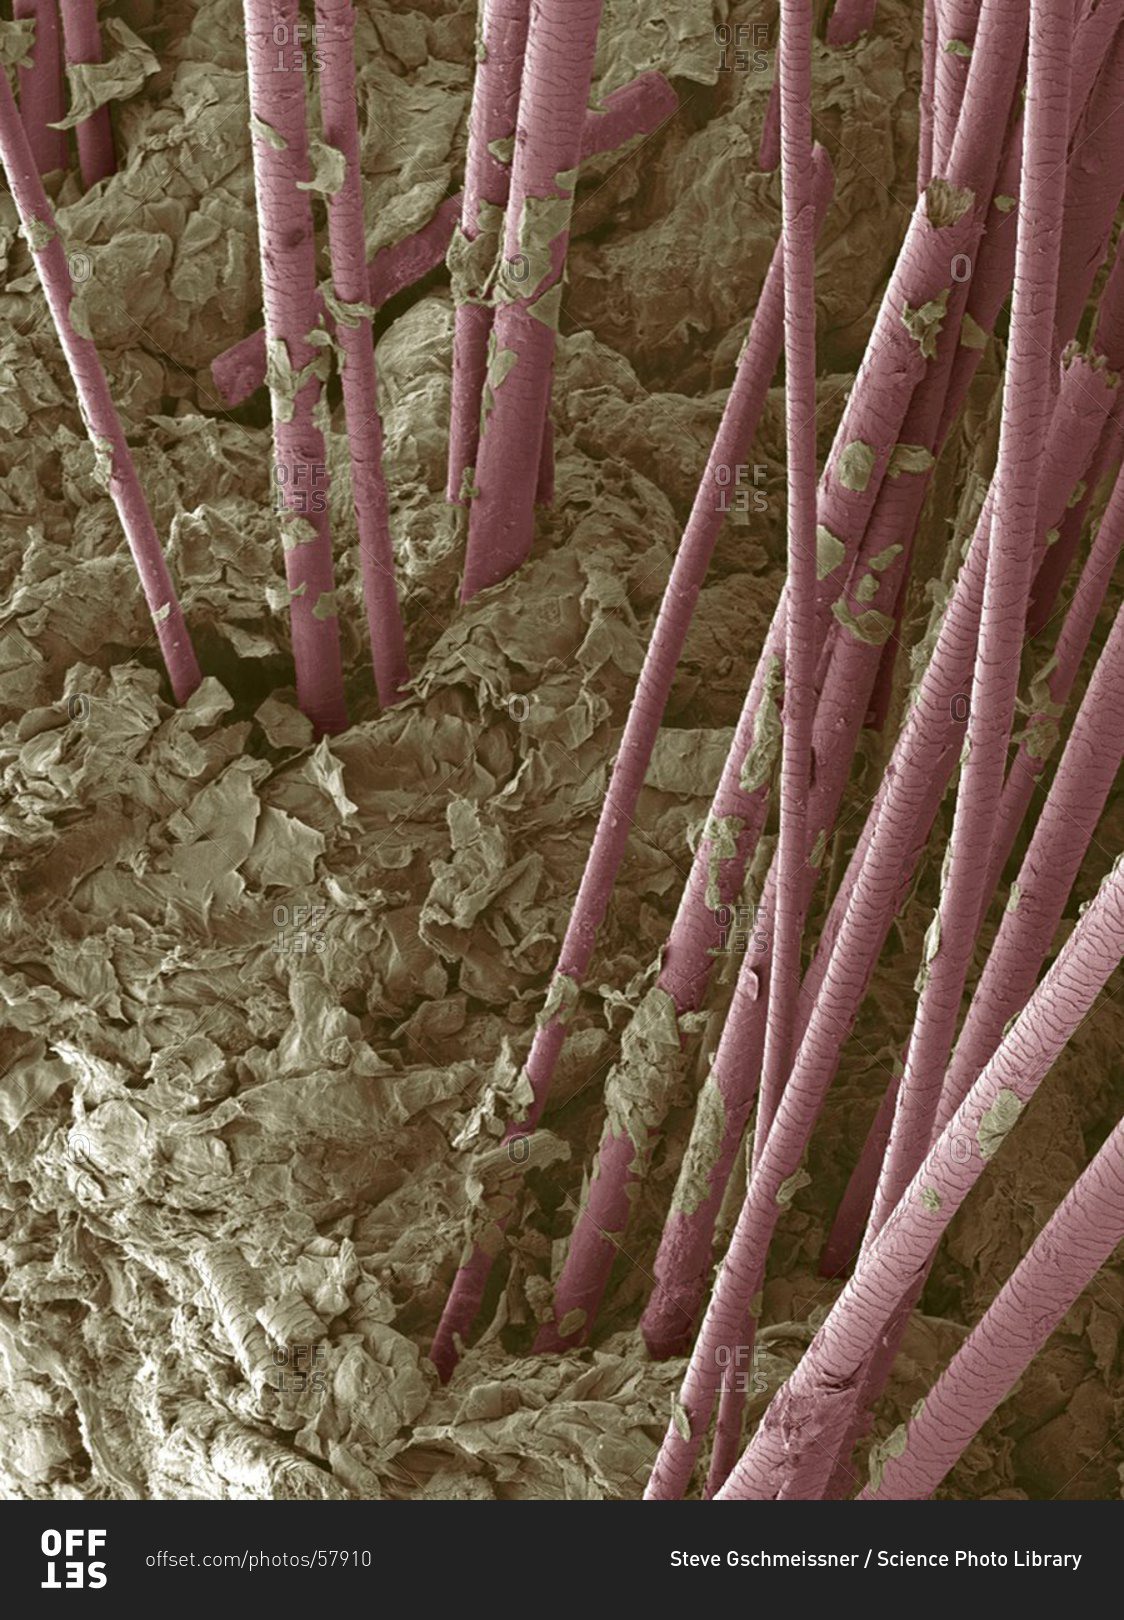 Из чего состоит волос человека под микроскопом